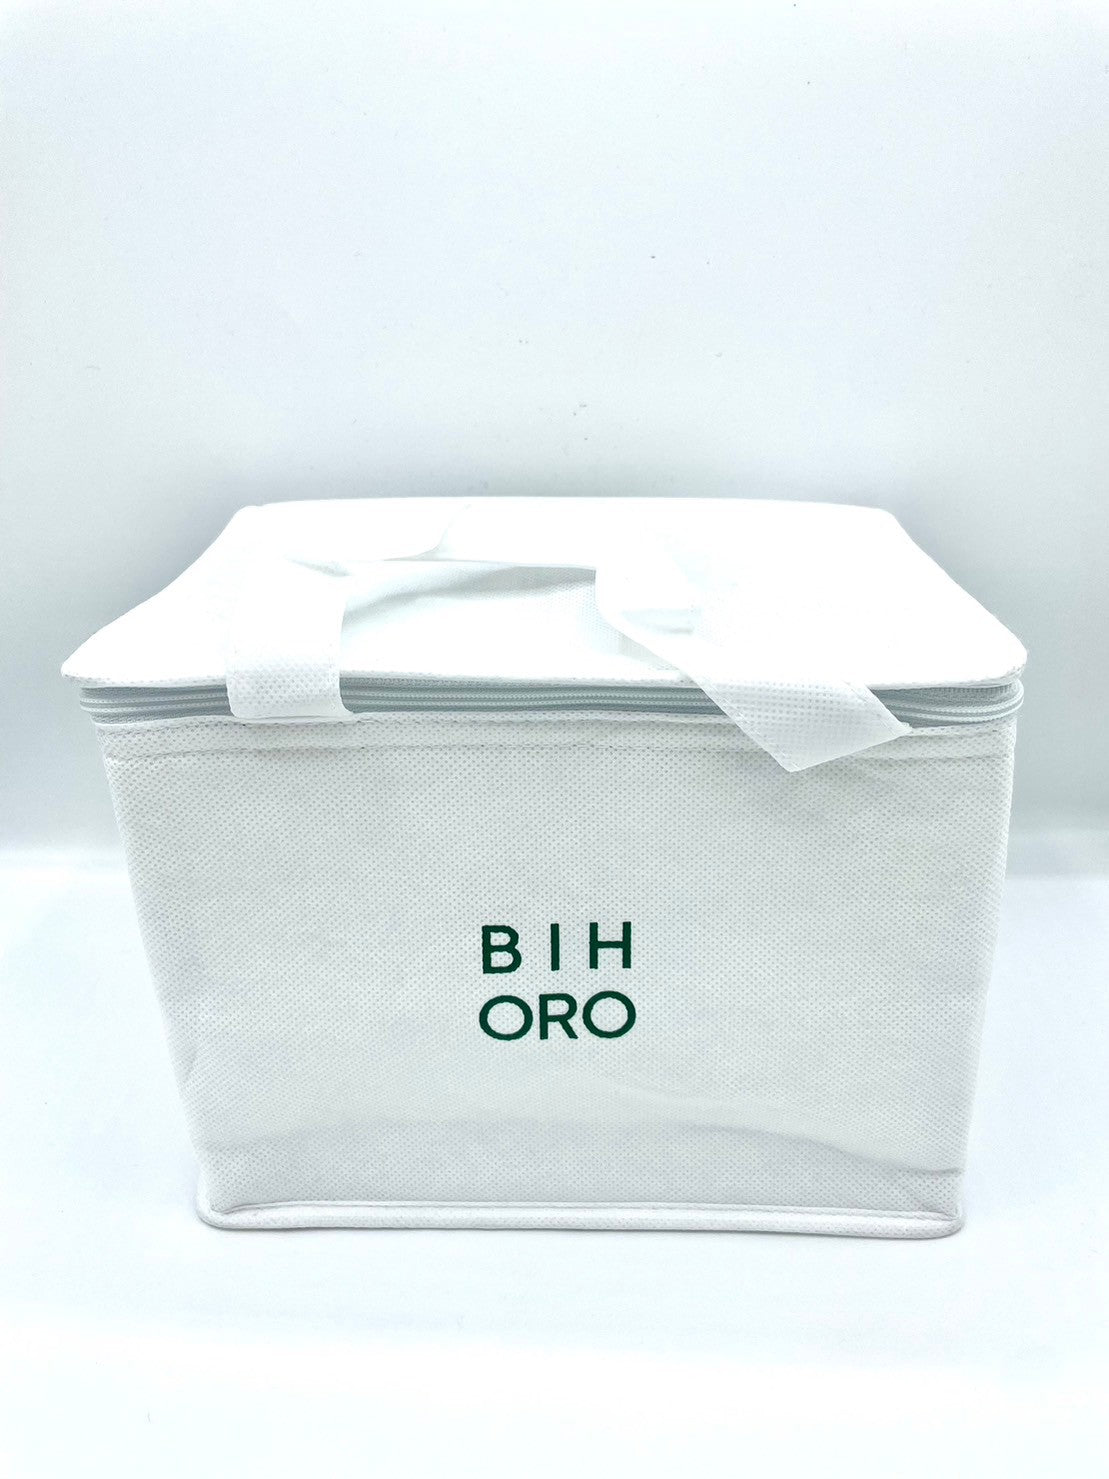 23 BIHORO ORIGINAL　ボックスクーラー/ホワイト